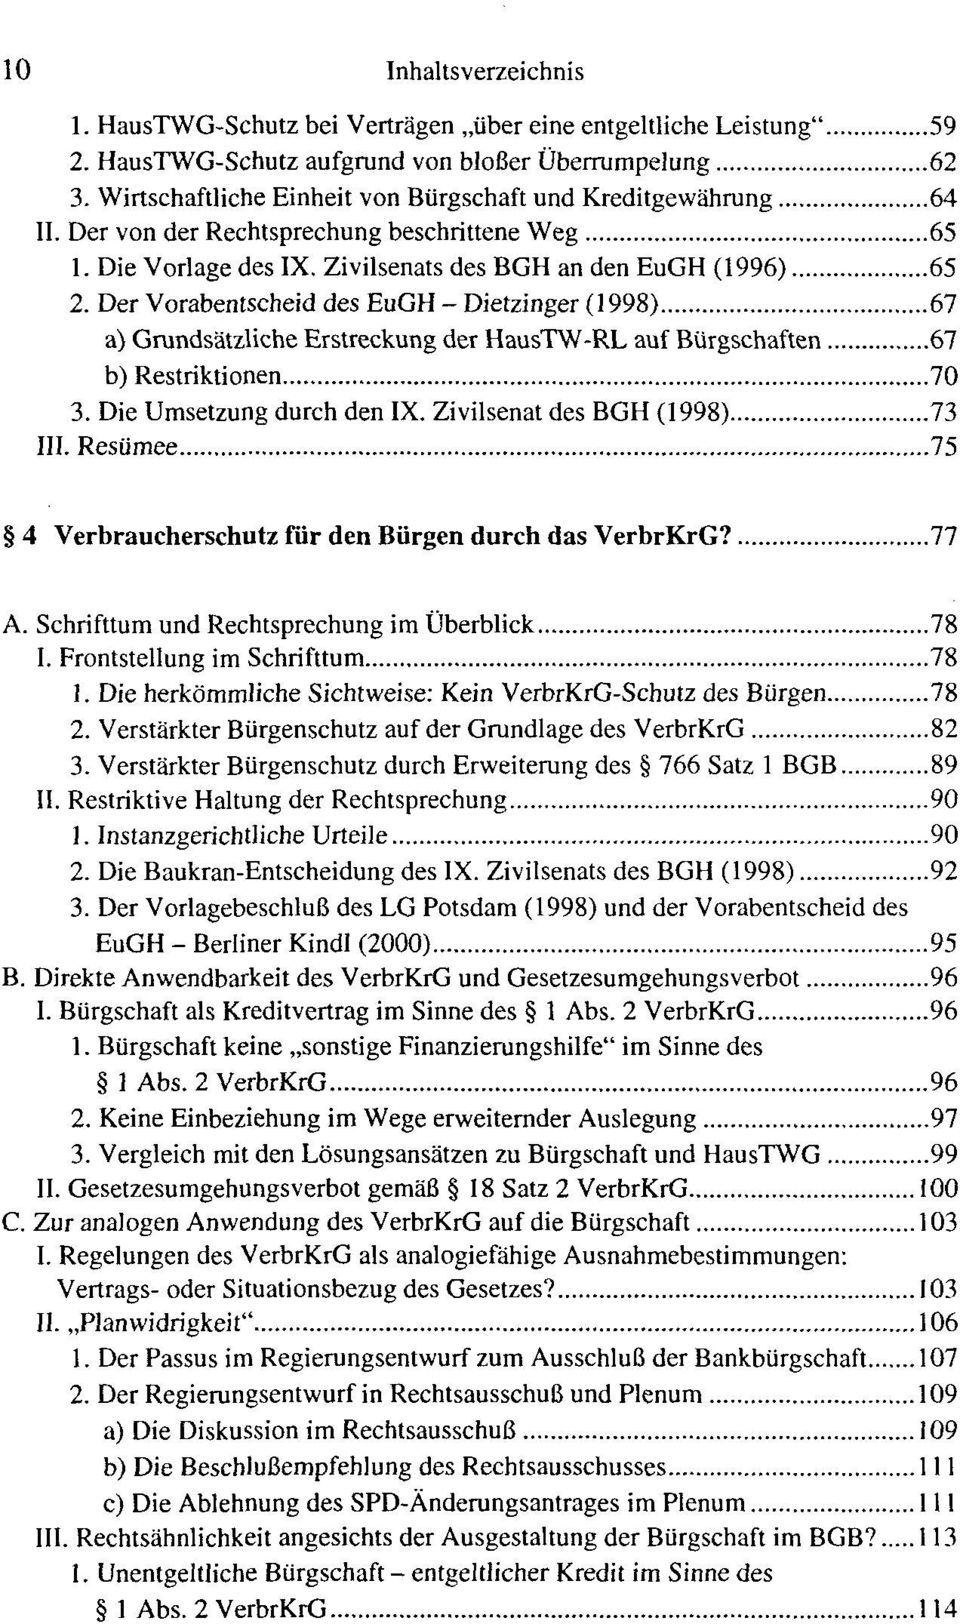 Der Vorabentscheid des EuGH - Dietzinger (1998) 67 a) Grundsatzliche Erstreckung der HausTW-RL auf Burgschaften 67 b) Restriktionen 70 3. Die Umsetzung durch den IX. Zivilsenat des BGH (1998) 73 III.